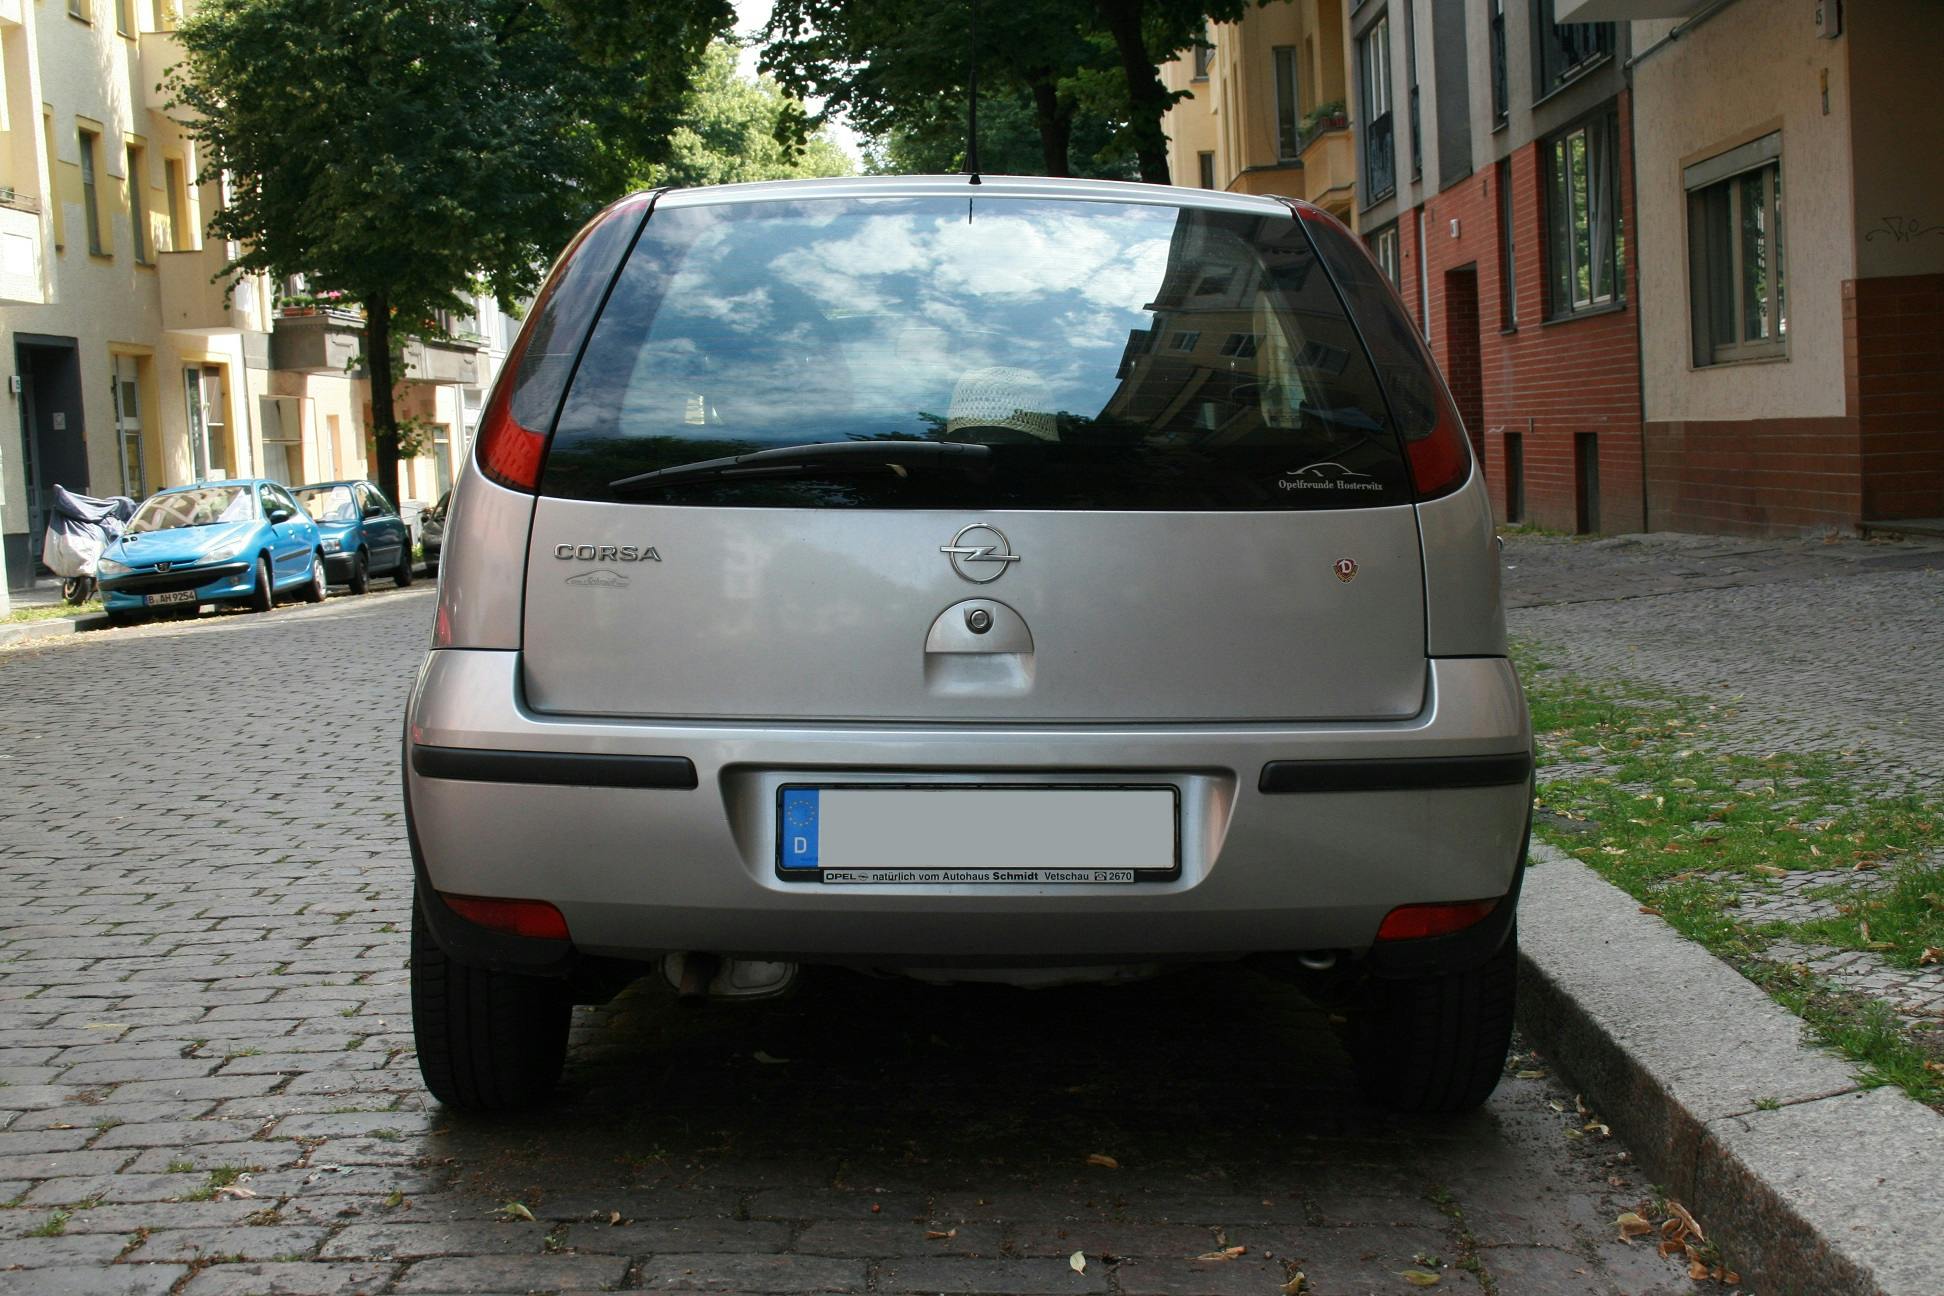 Opel Corsa C, Baujahr 2000 bis 2006 ▻ Technische Daten zu allen  Motorisierungen - AUTO MOTOR UND SPORT